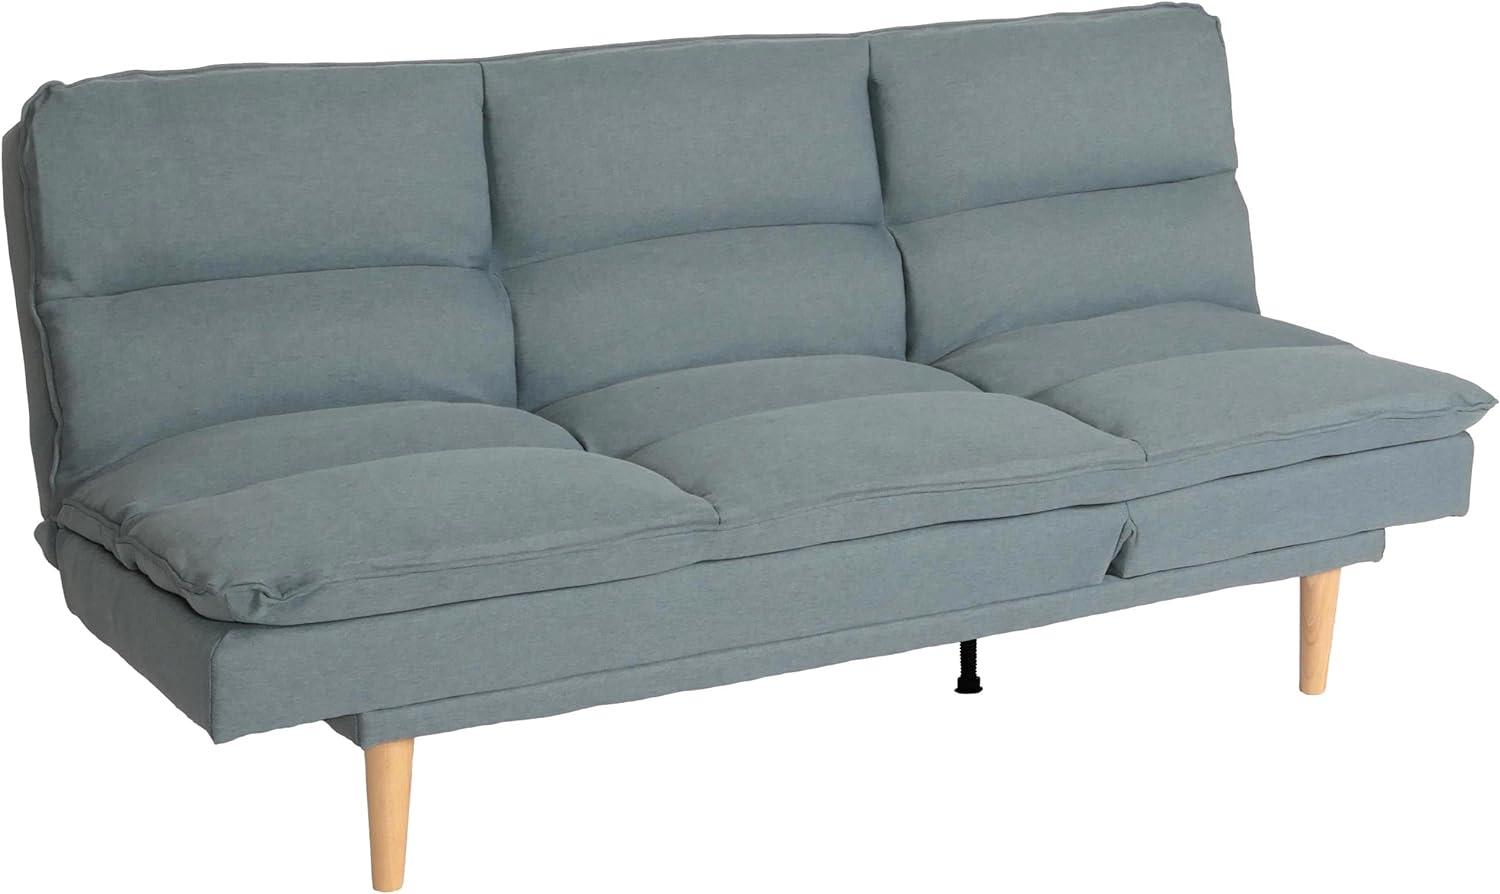 Schlafsofa HWC-M79, Gästebett Schlafcouch Couch Sofa, Schlaffunktion Liegefläche 180x110cm ~ Stoff/Textil blau-grau Bild 1